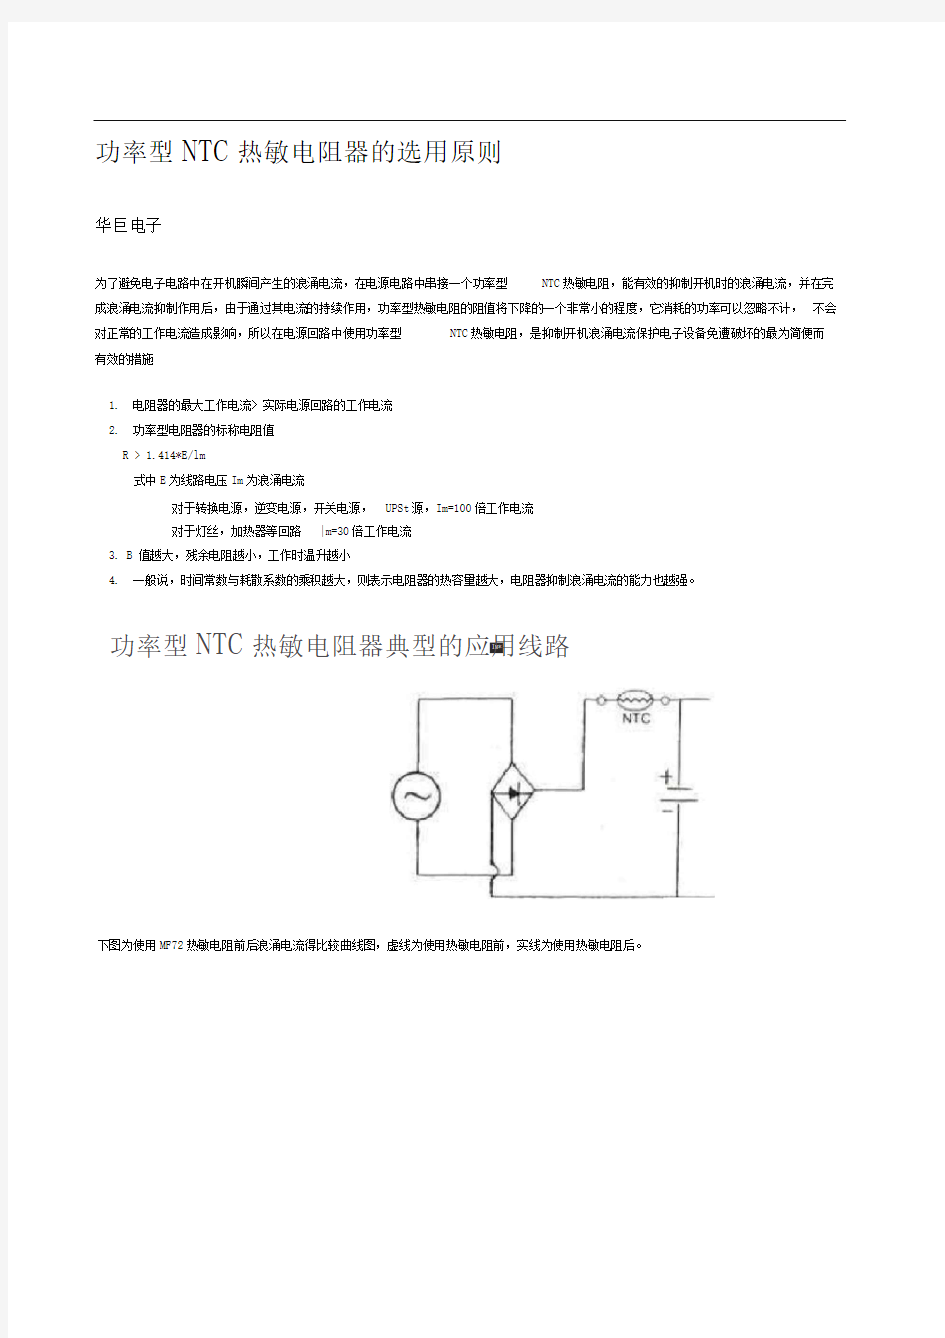 功率型NTC热敏电阻器的选用原则